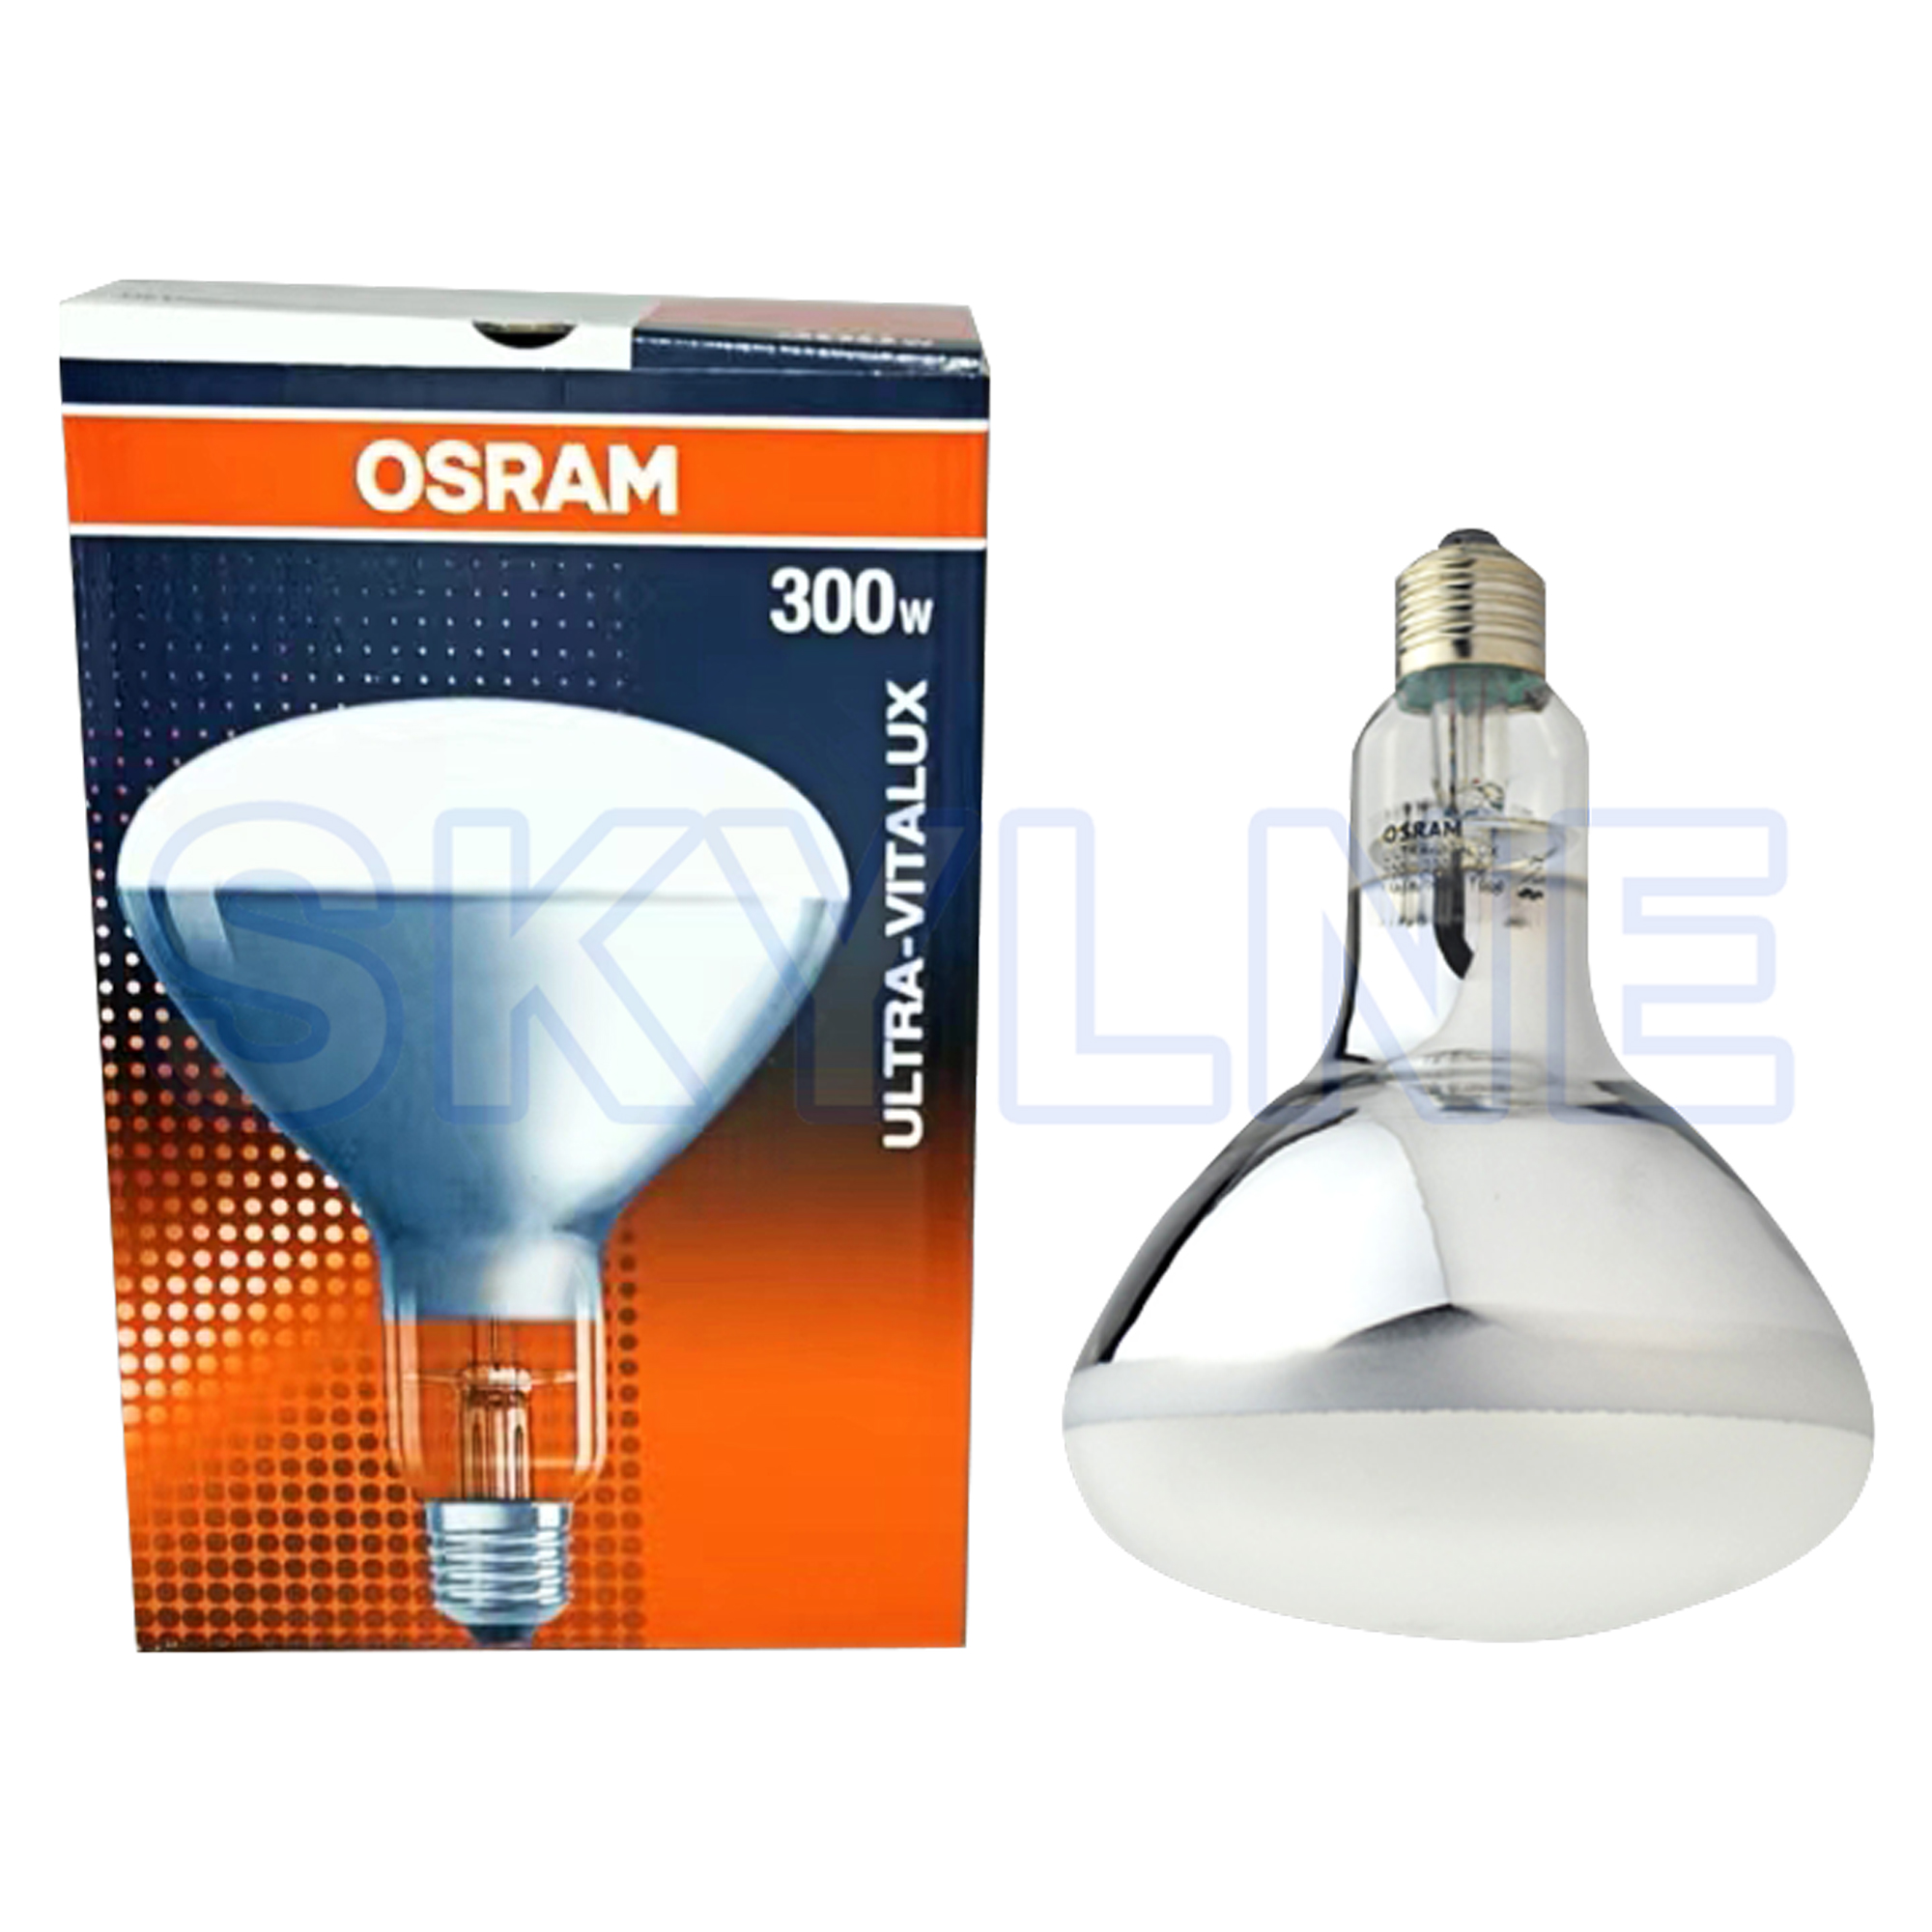 OSRAM 300W Bulb